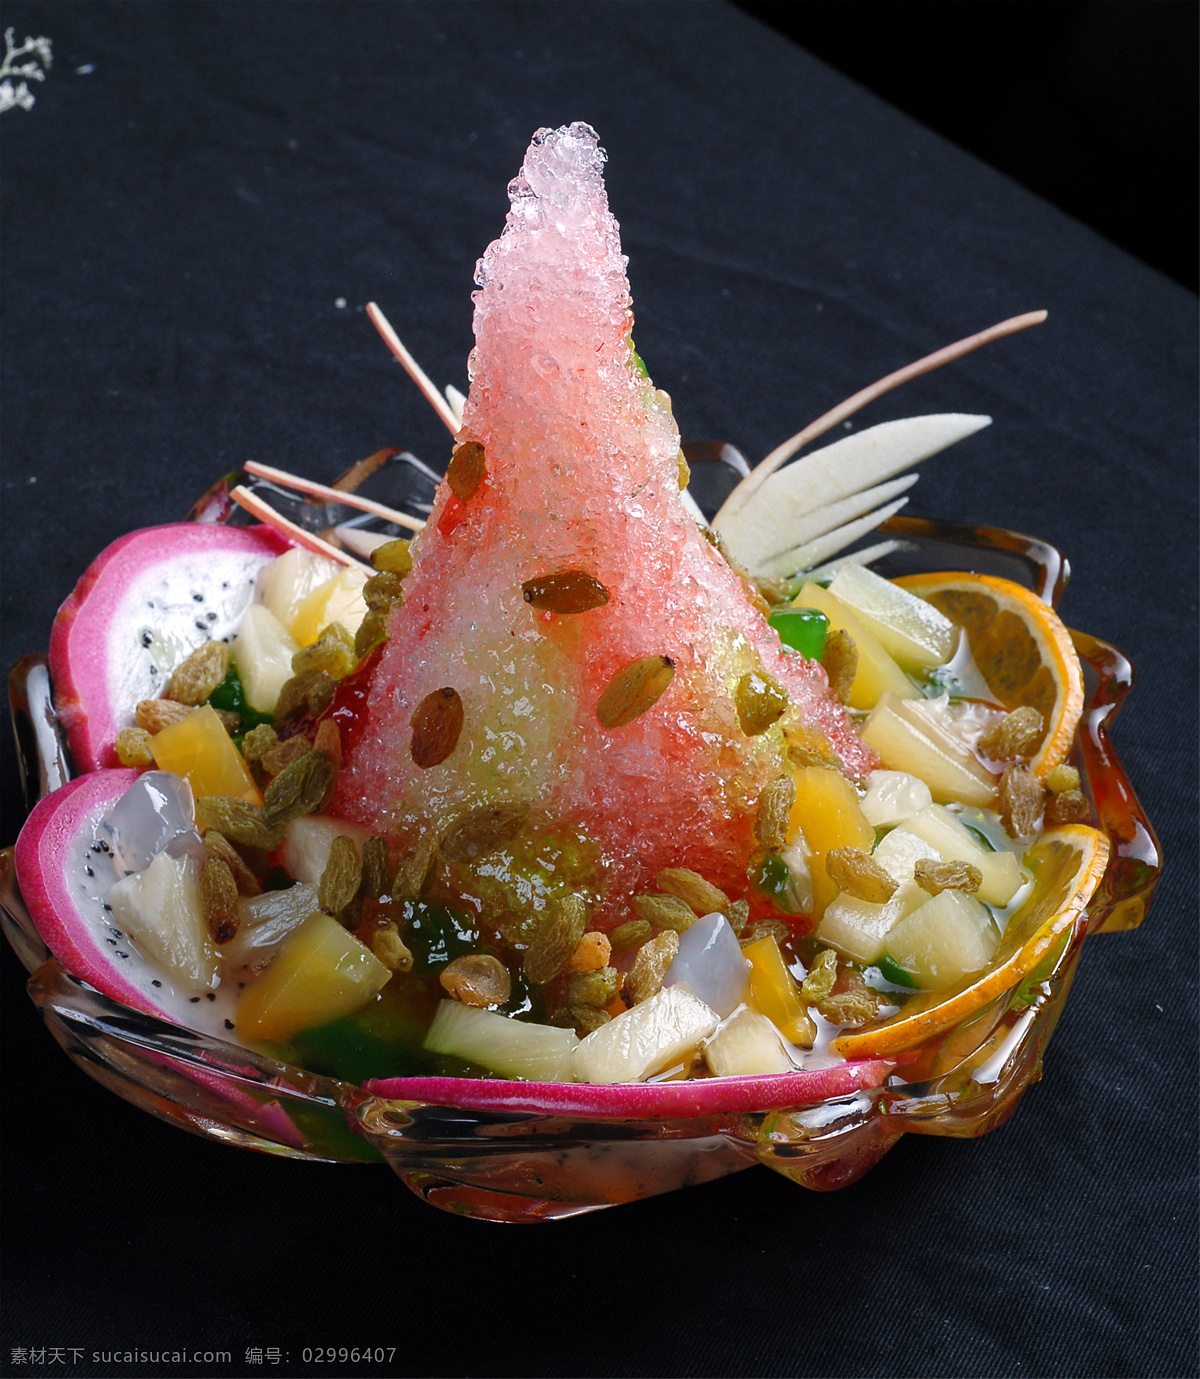 列西堤岛刨冰 美食 传统美食 餐饮美食 高清菜谱用图